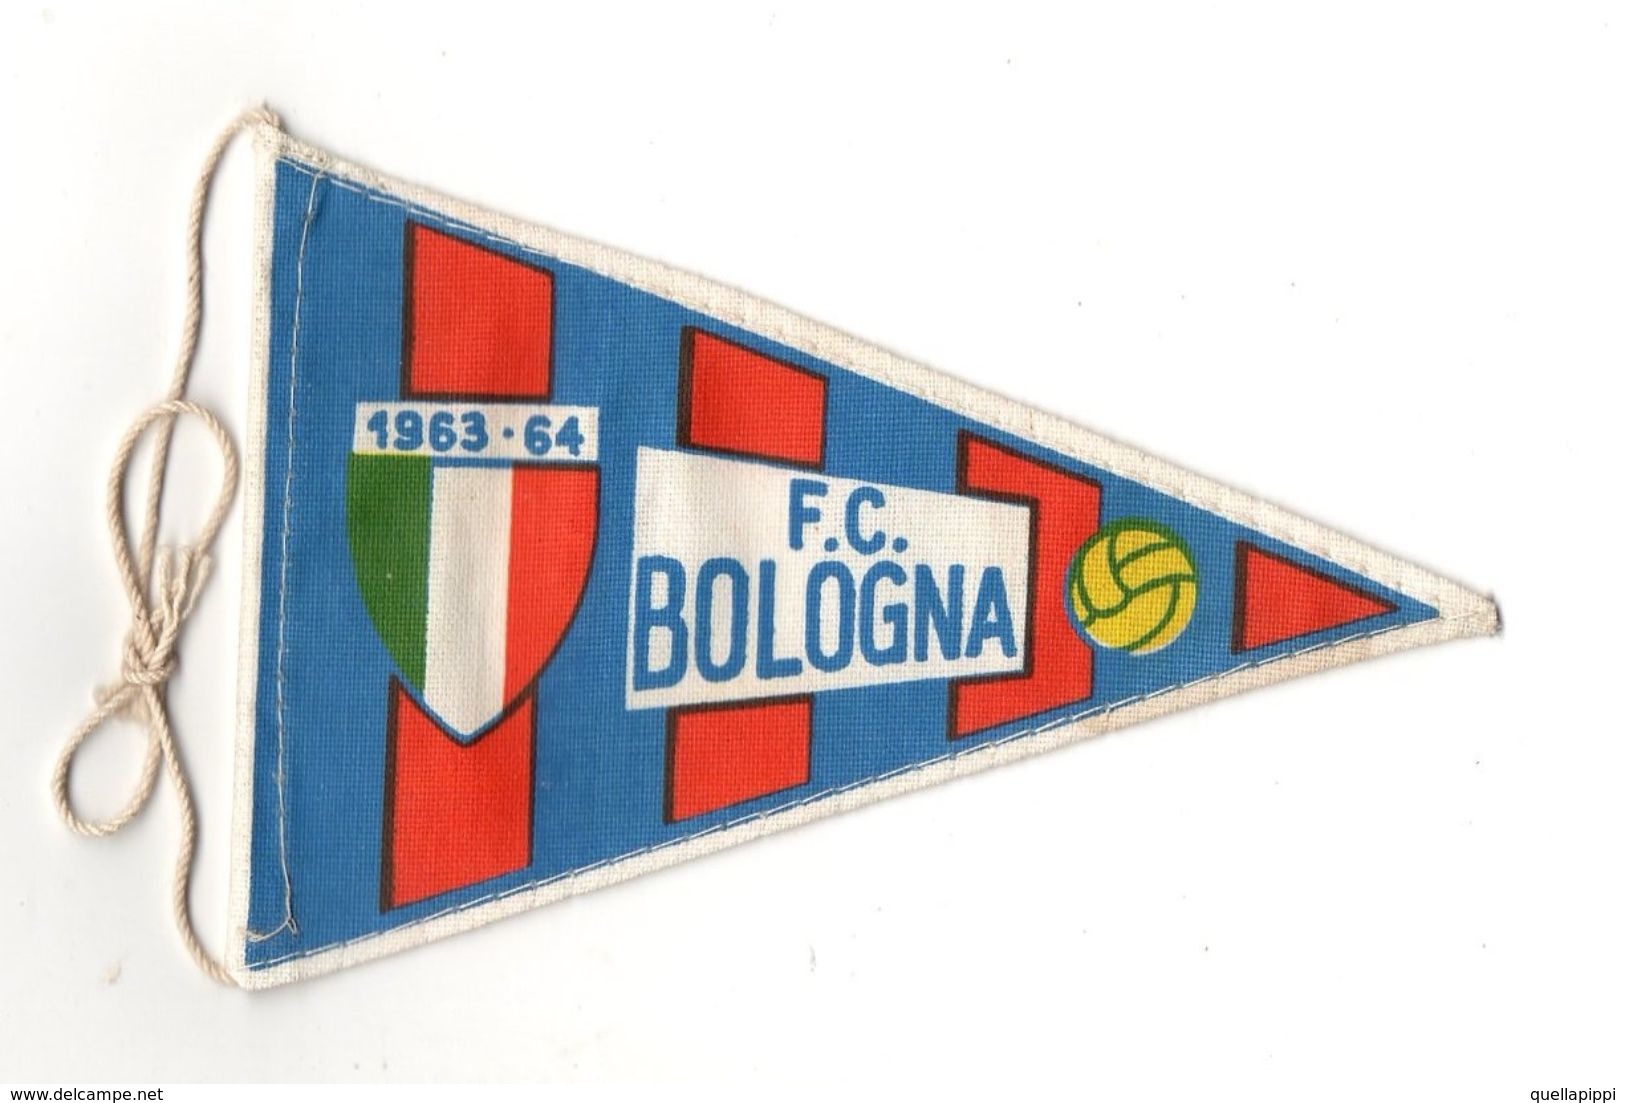 07130 "BOLOGNA F.C. FOOTBALL CLUB - BANDIERINA BIFRONTE IN STOFFA CON LEGACCI" ANNI 1963/1964 ORIG. - Uniformes Recordatorios & Misc